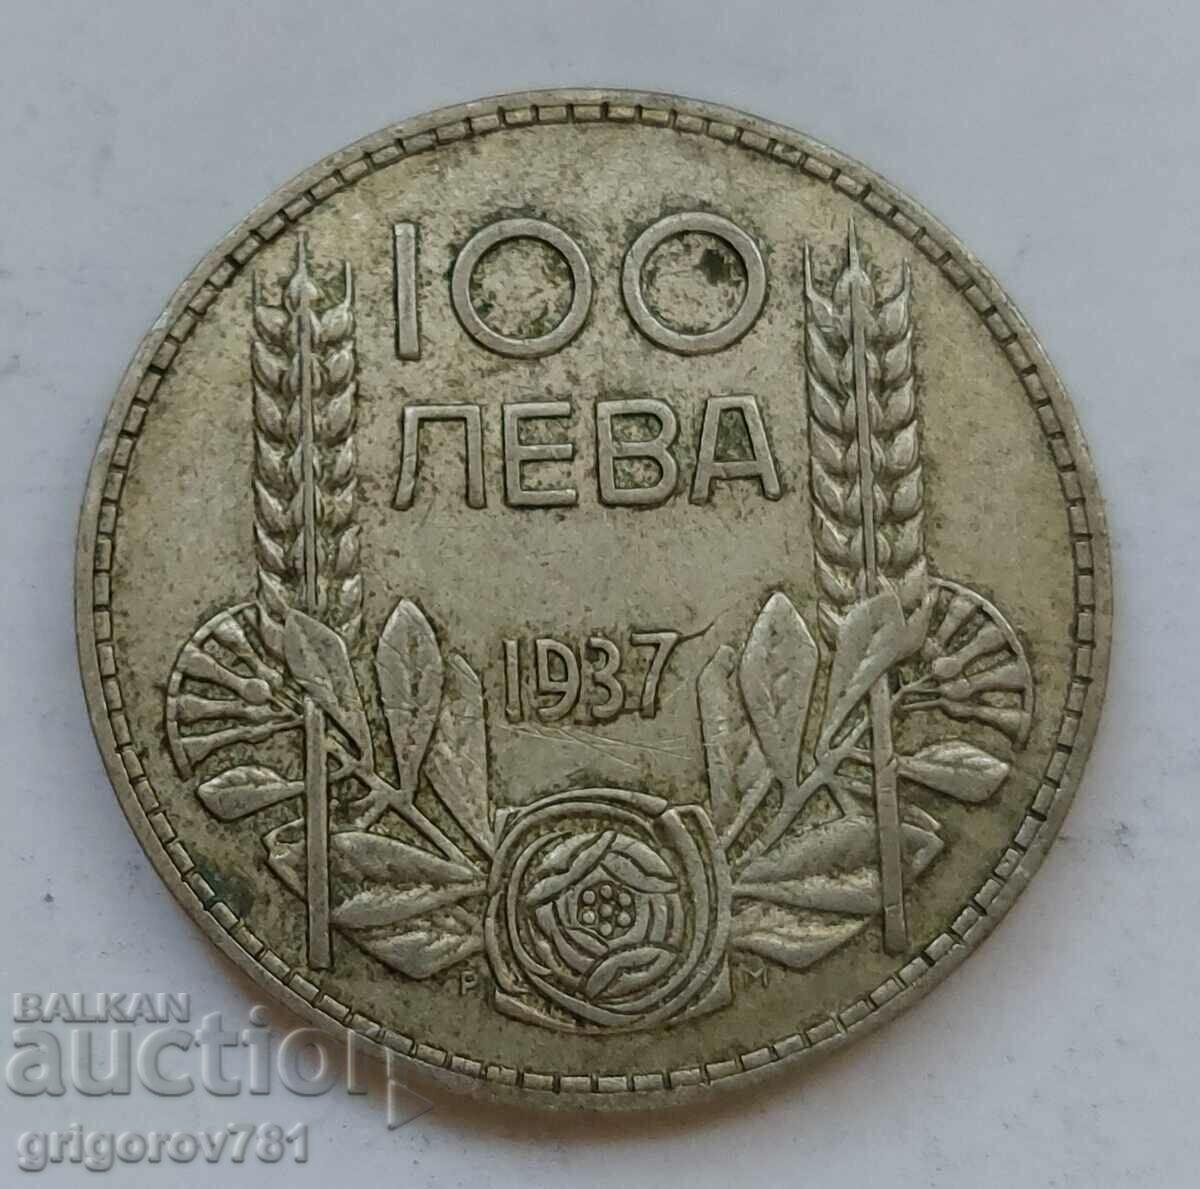 100 leva silver Bulgaria 1937 - silver coin #137